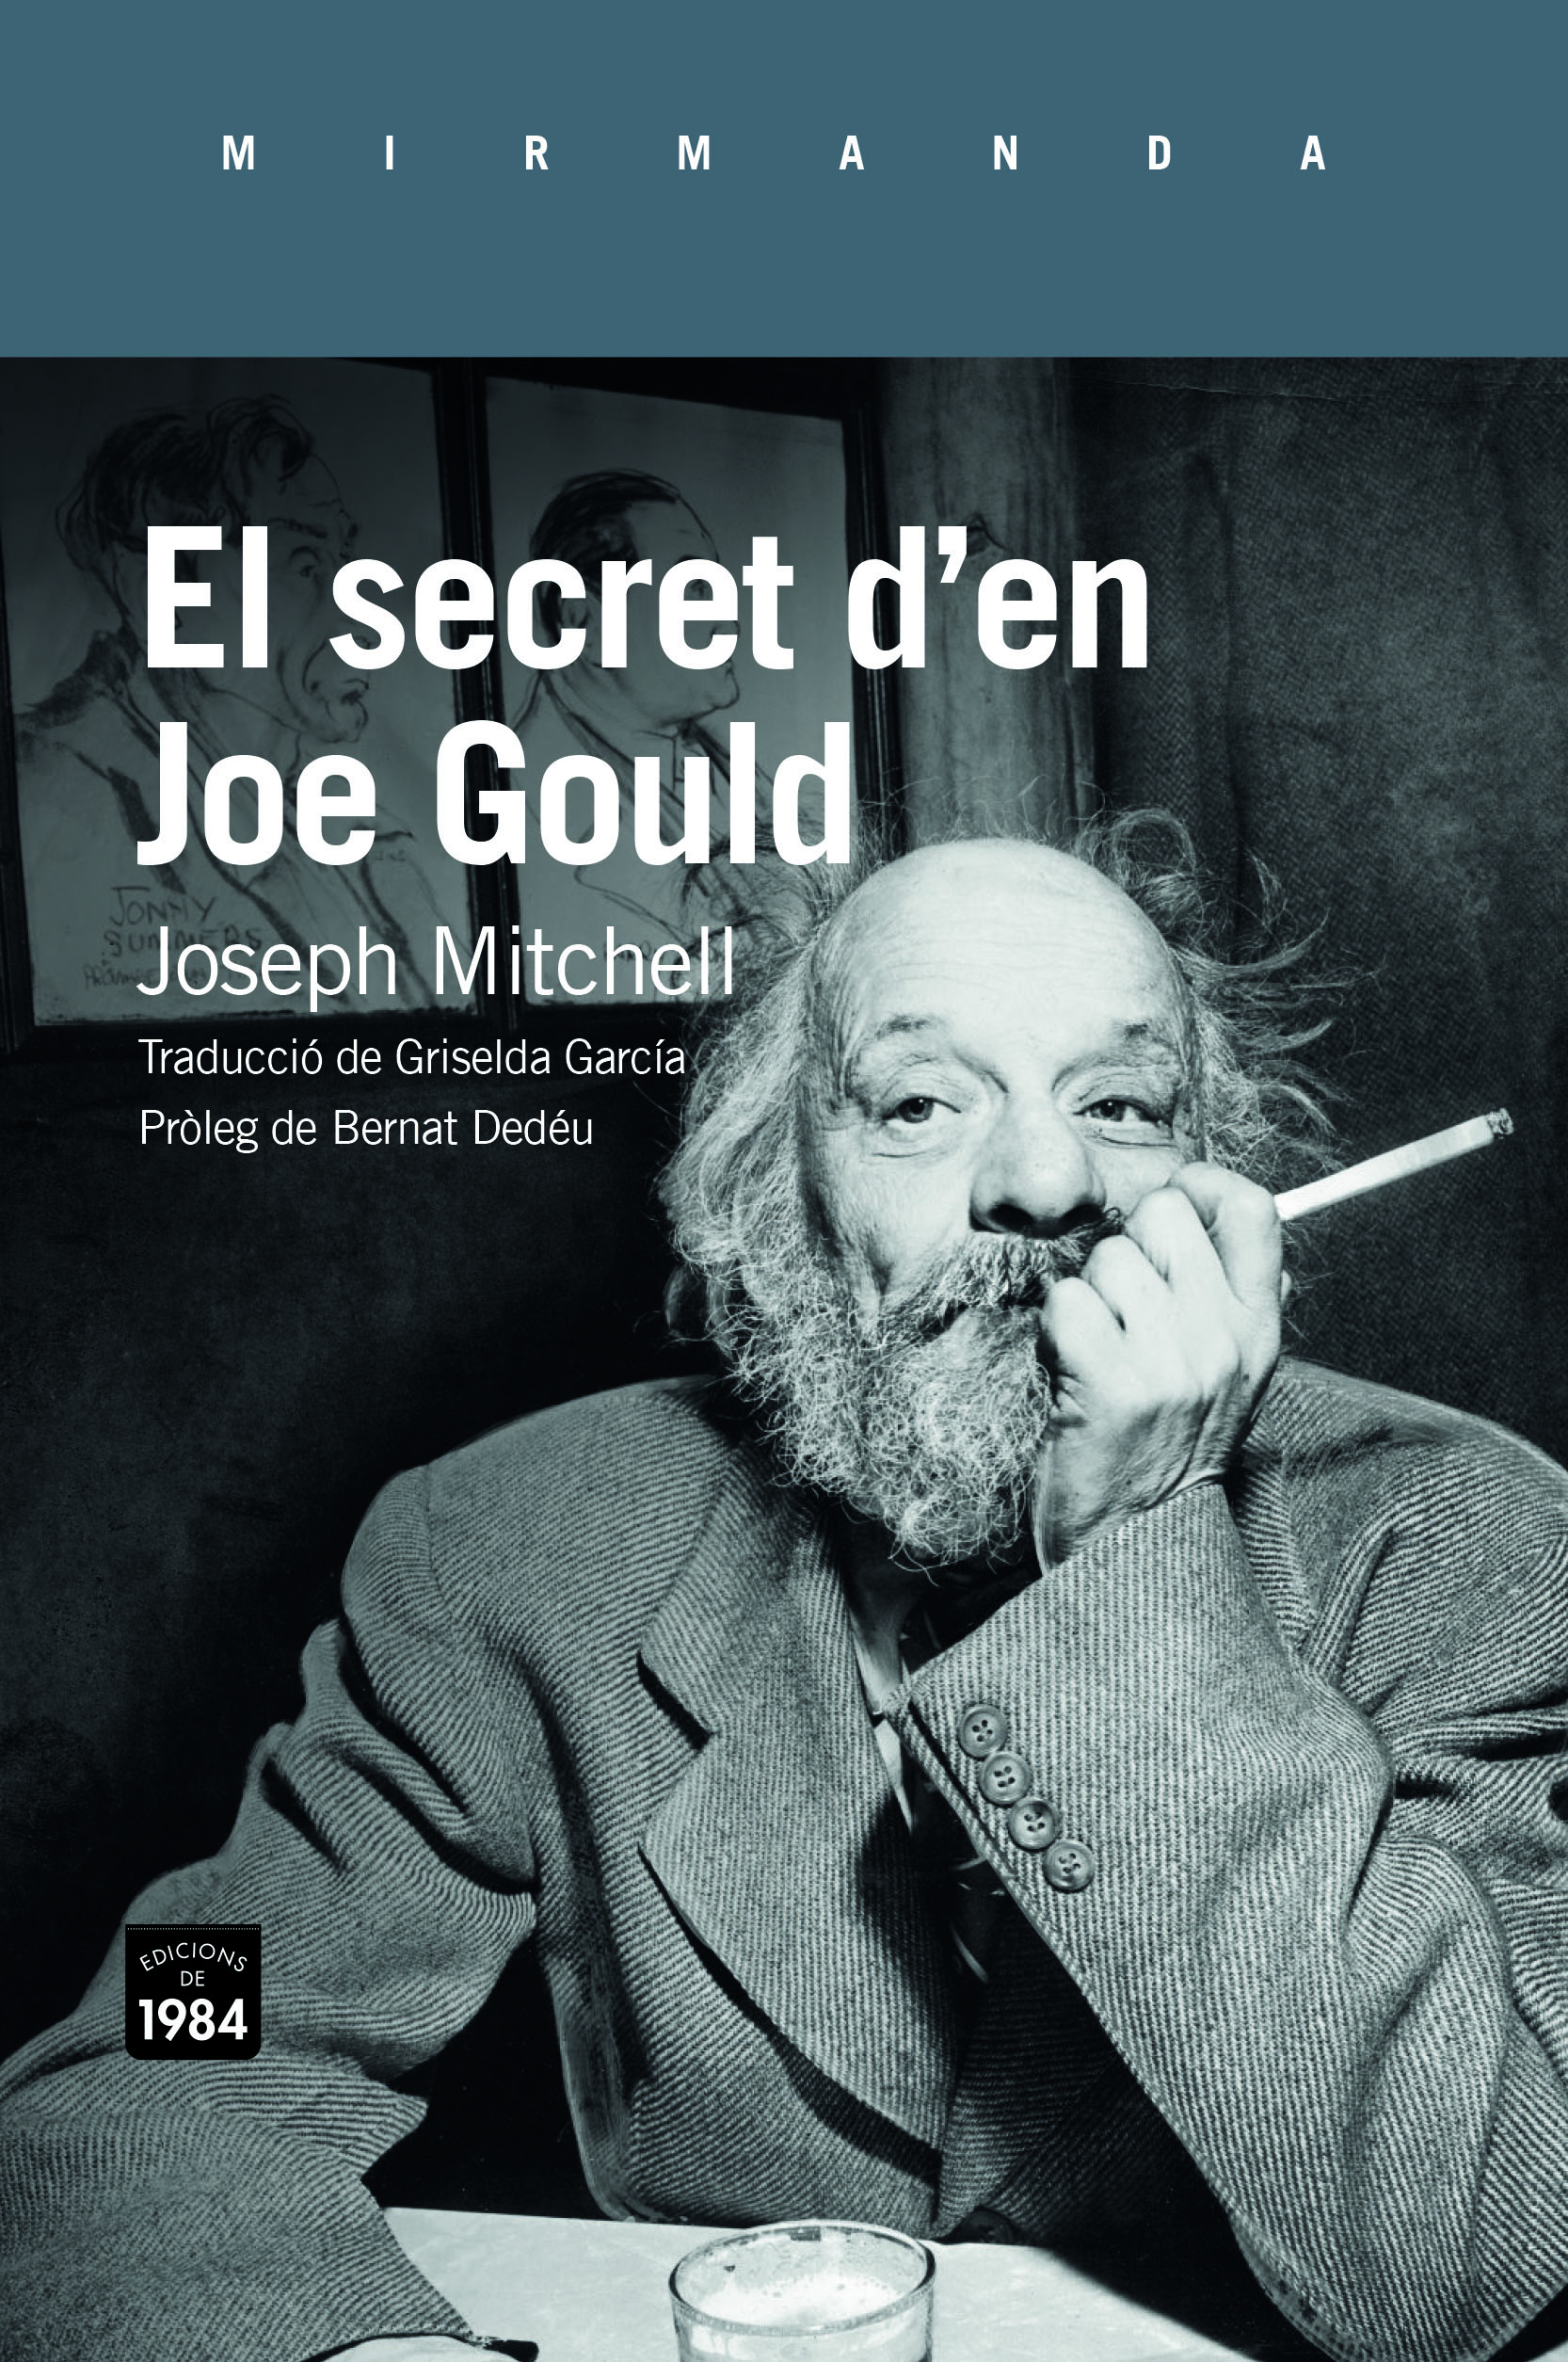 El secreto de Joe Gould - Mitchell, Joseph - 978-84-339-6906-4 - Editorial  Anagrama